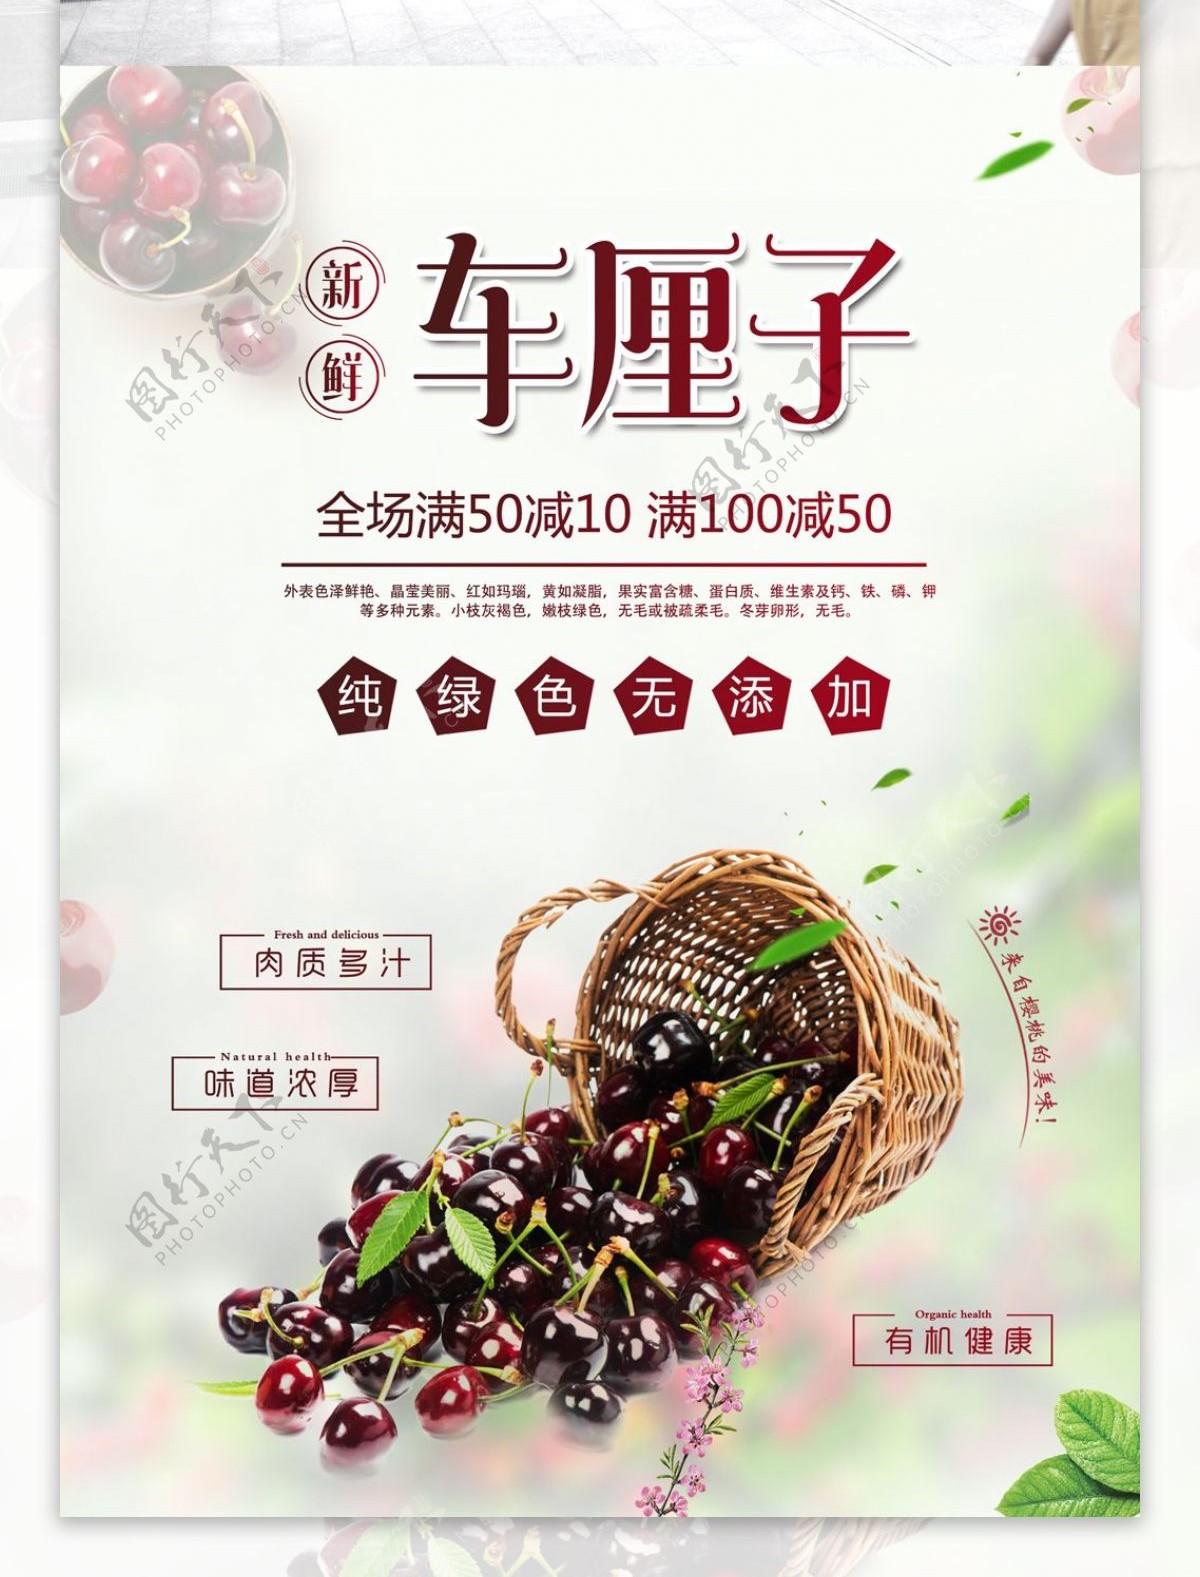 清新车厘子樱桃水果促销宣传海报